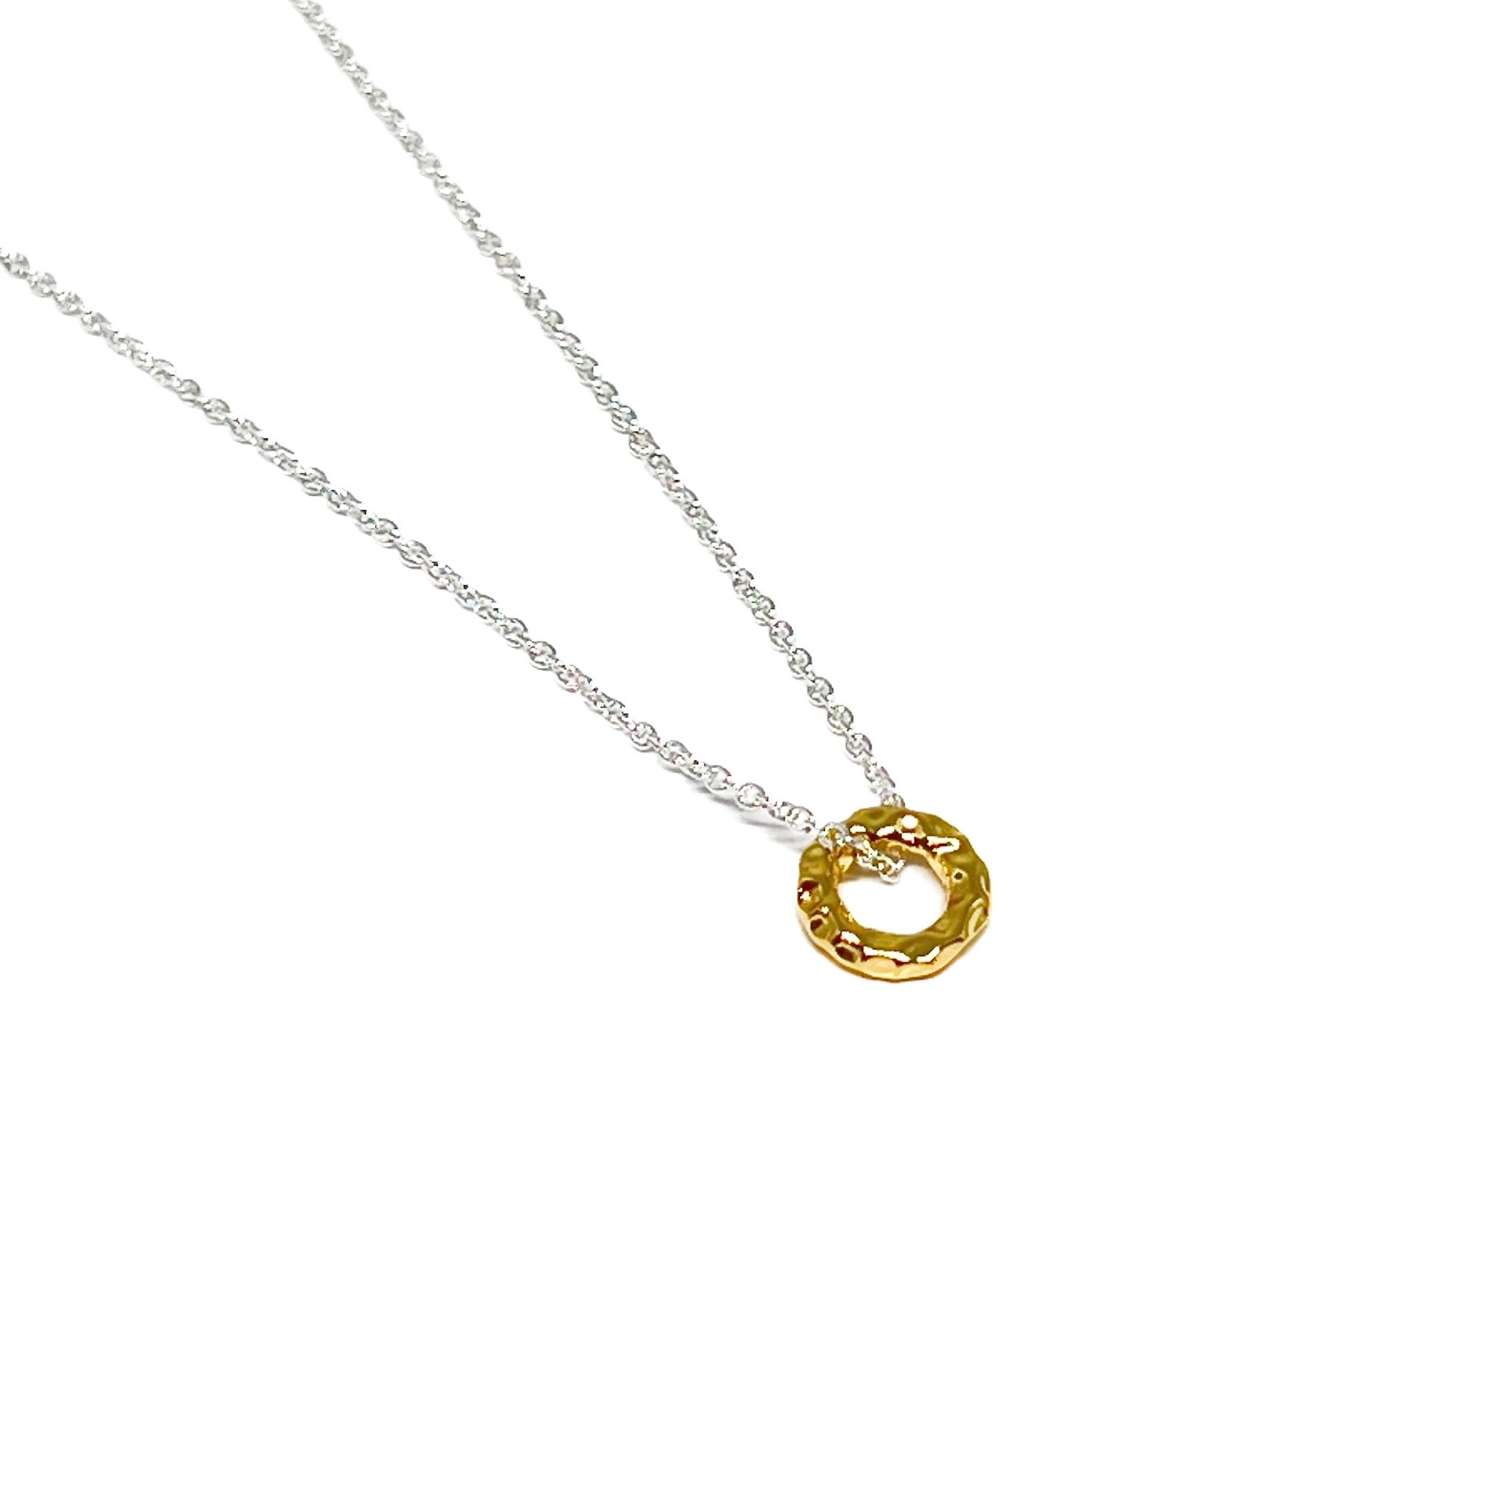 Blake Ring Necklace - Gold